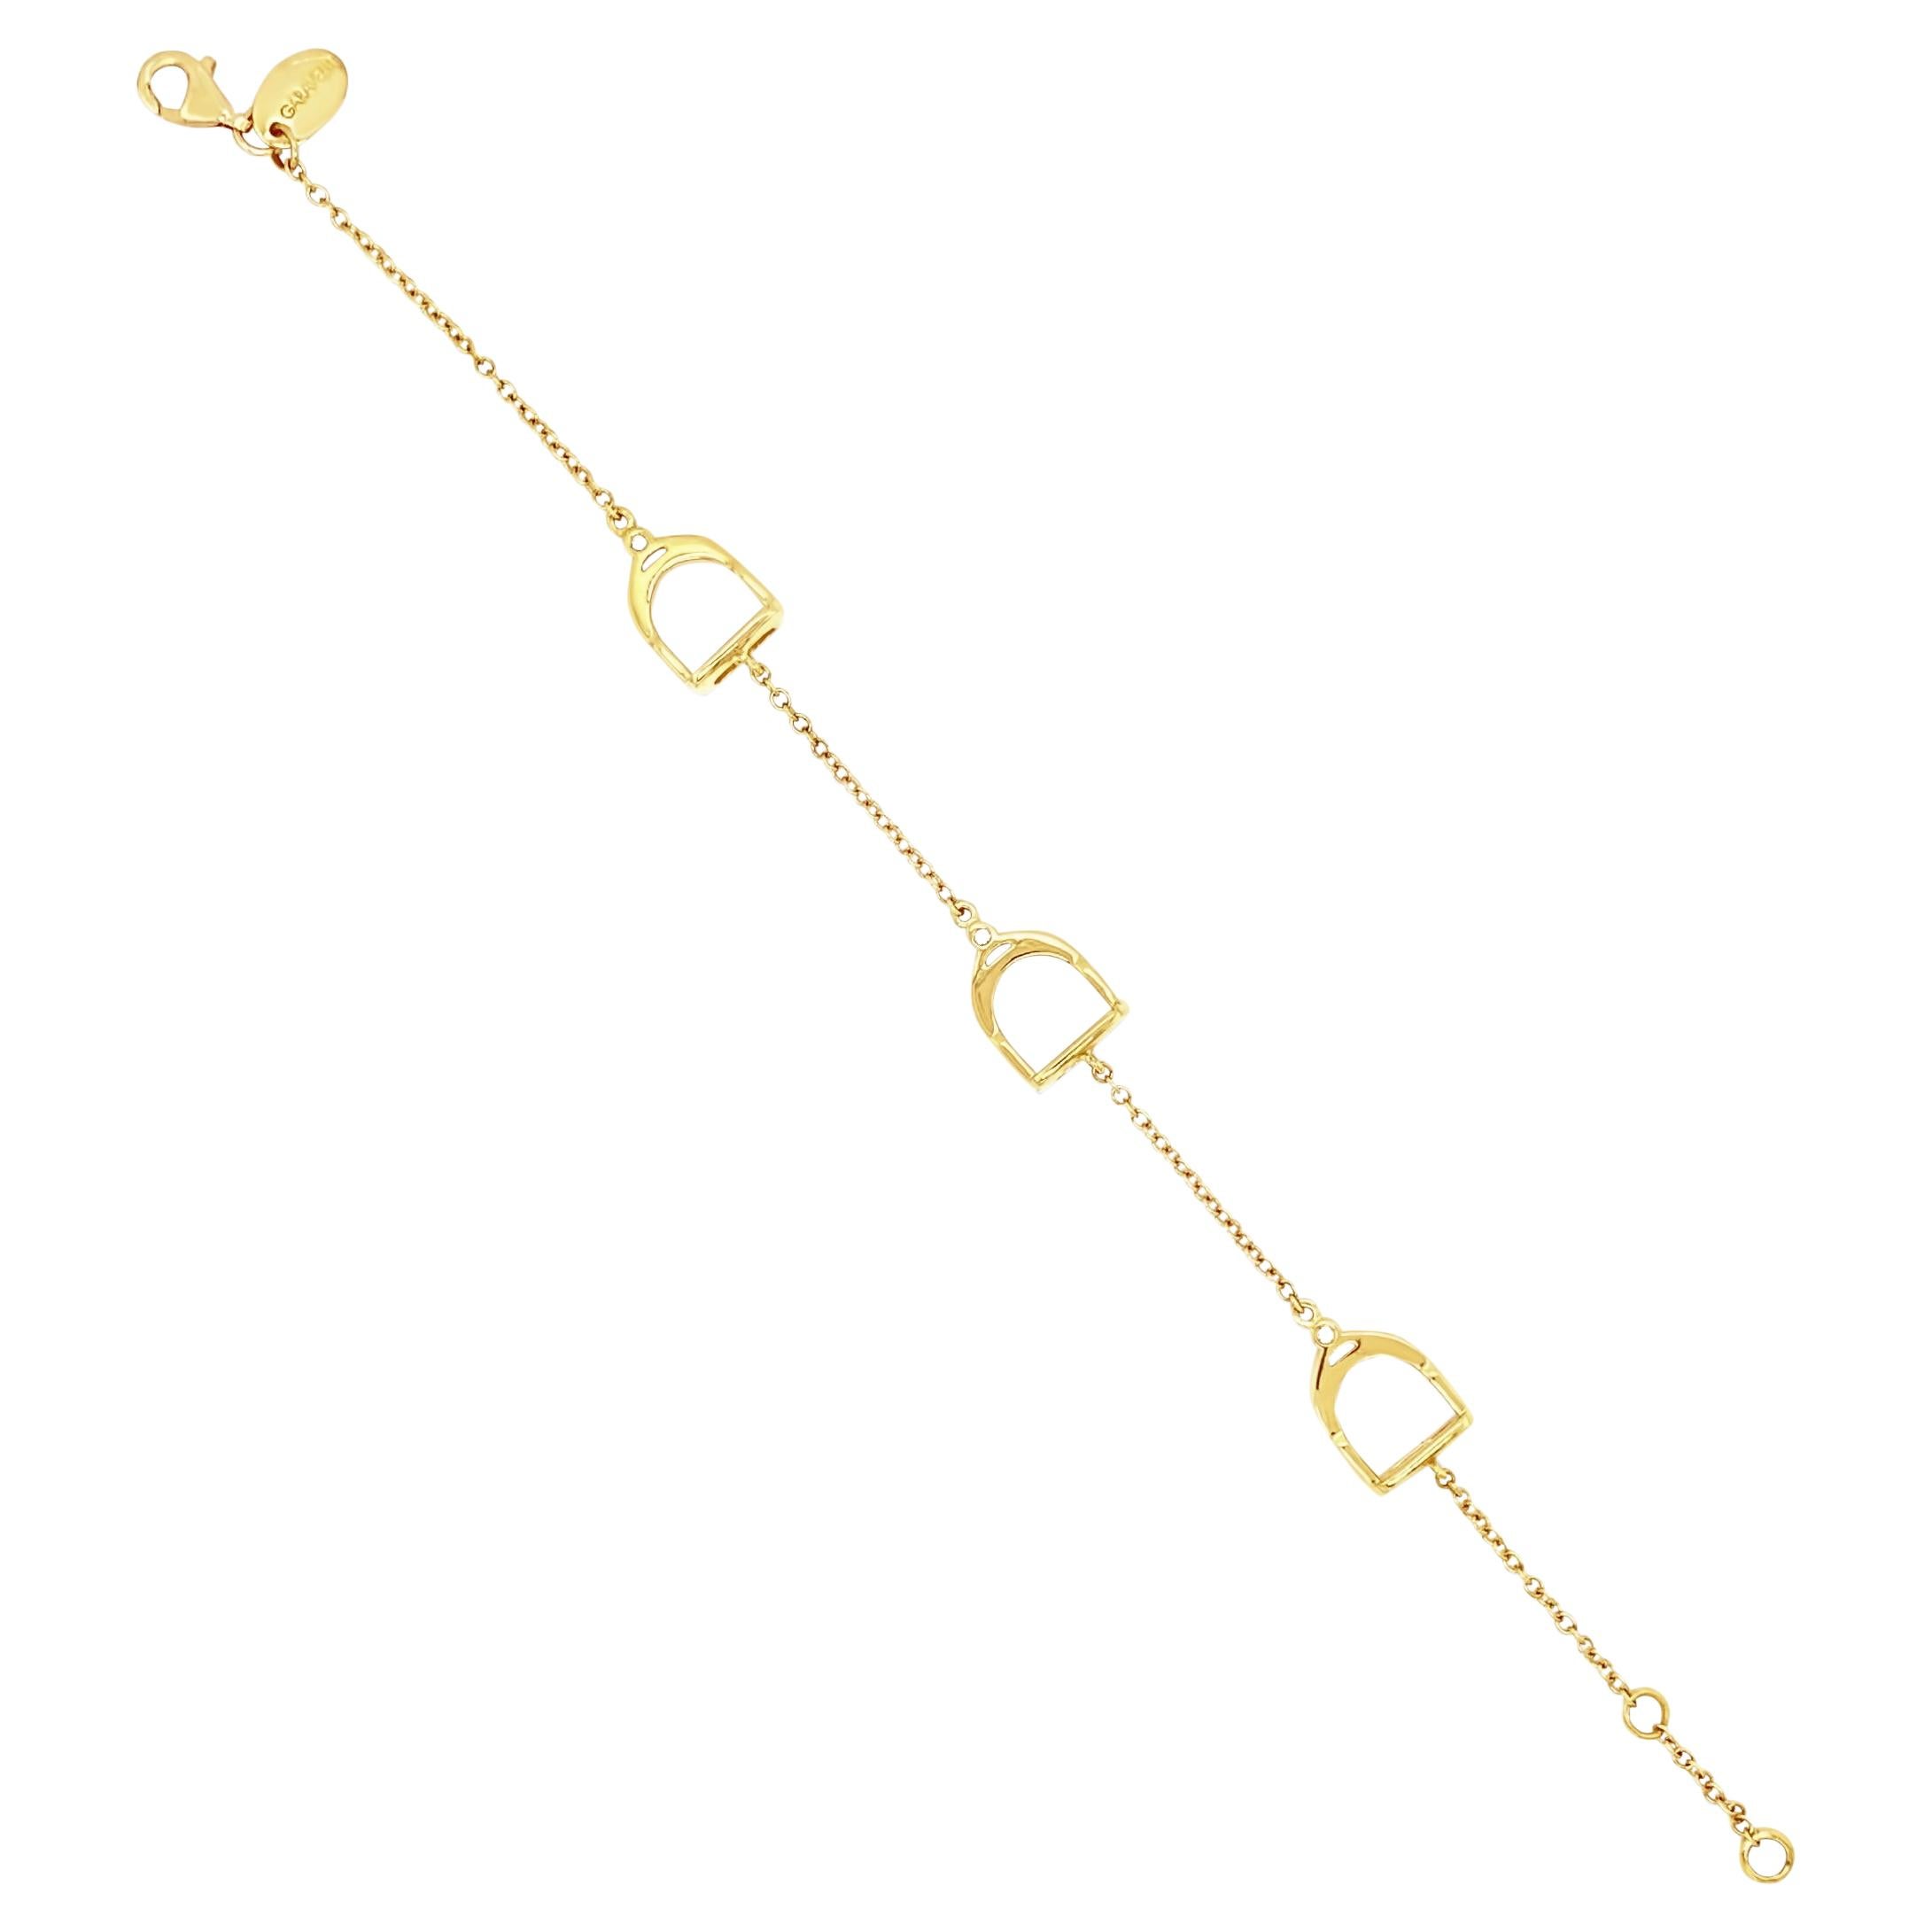 Garavelli Armband aus 18 Karat Gelbgold mit weißen Diamanten und Steigbügeln